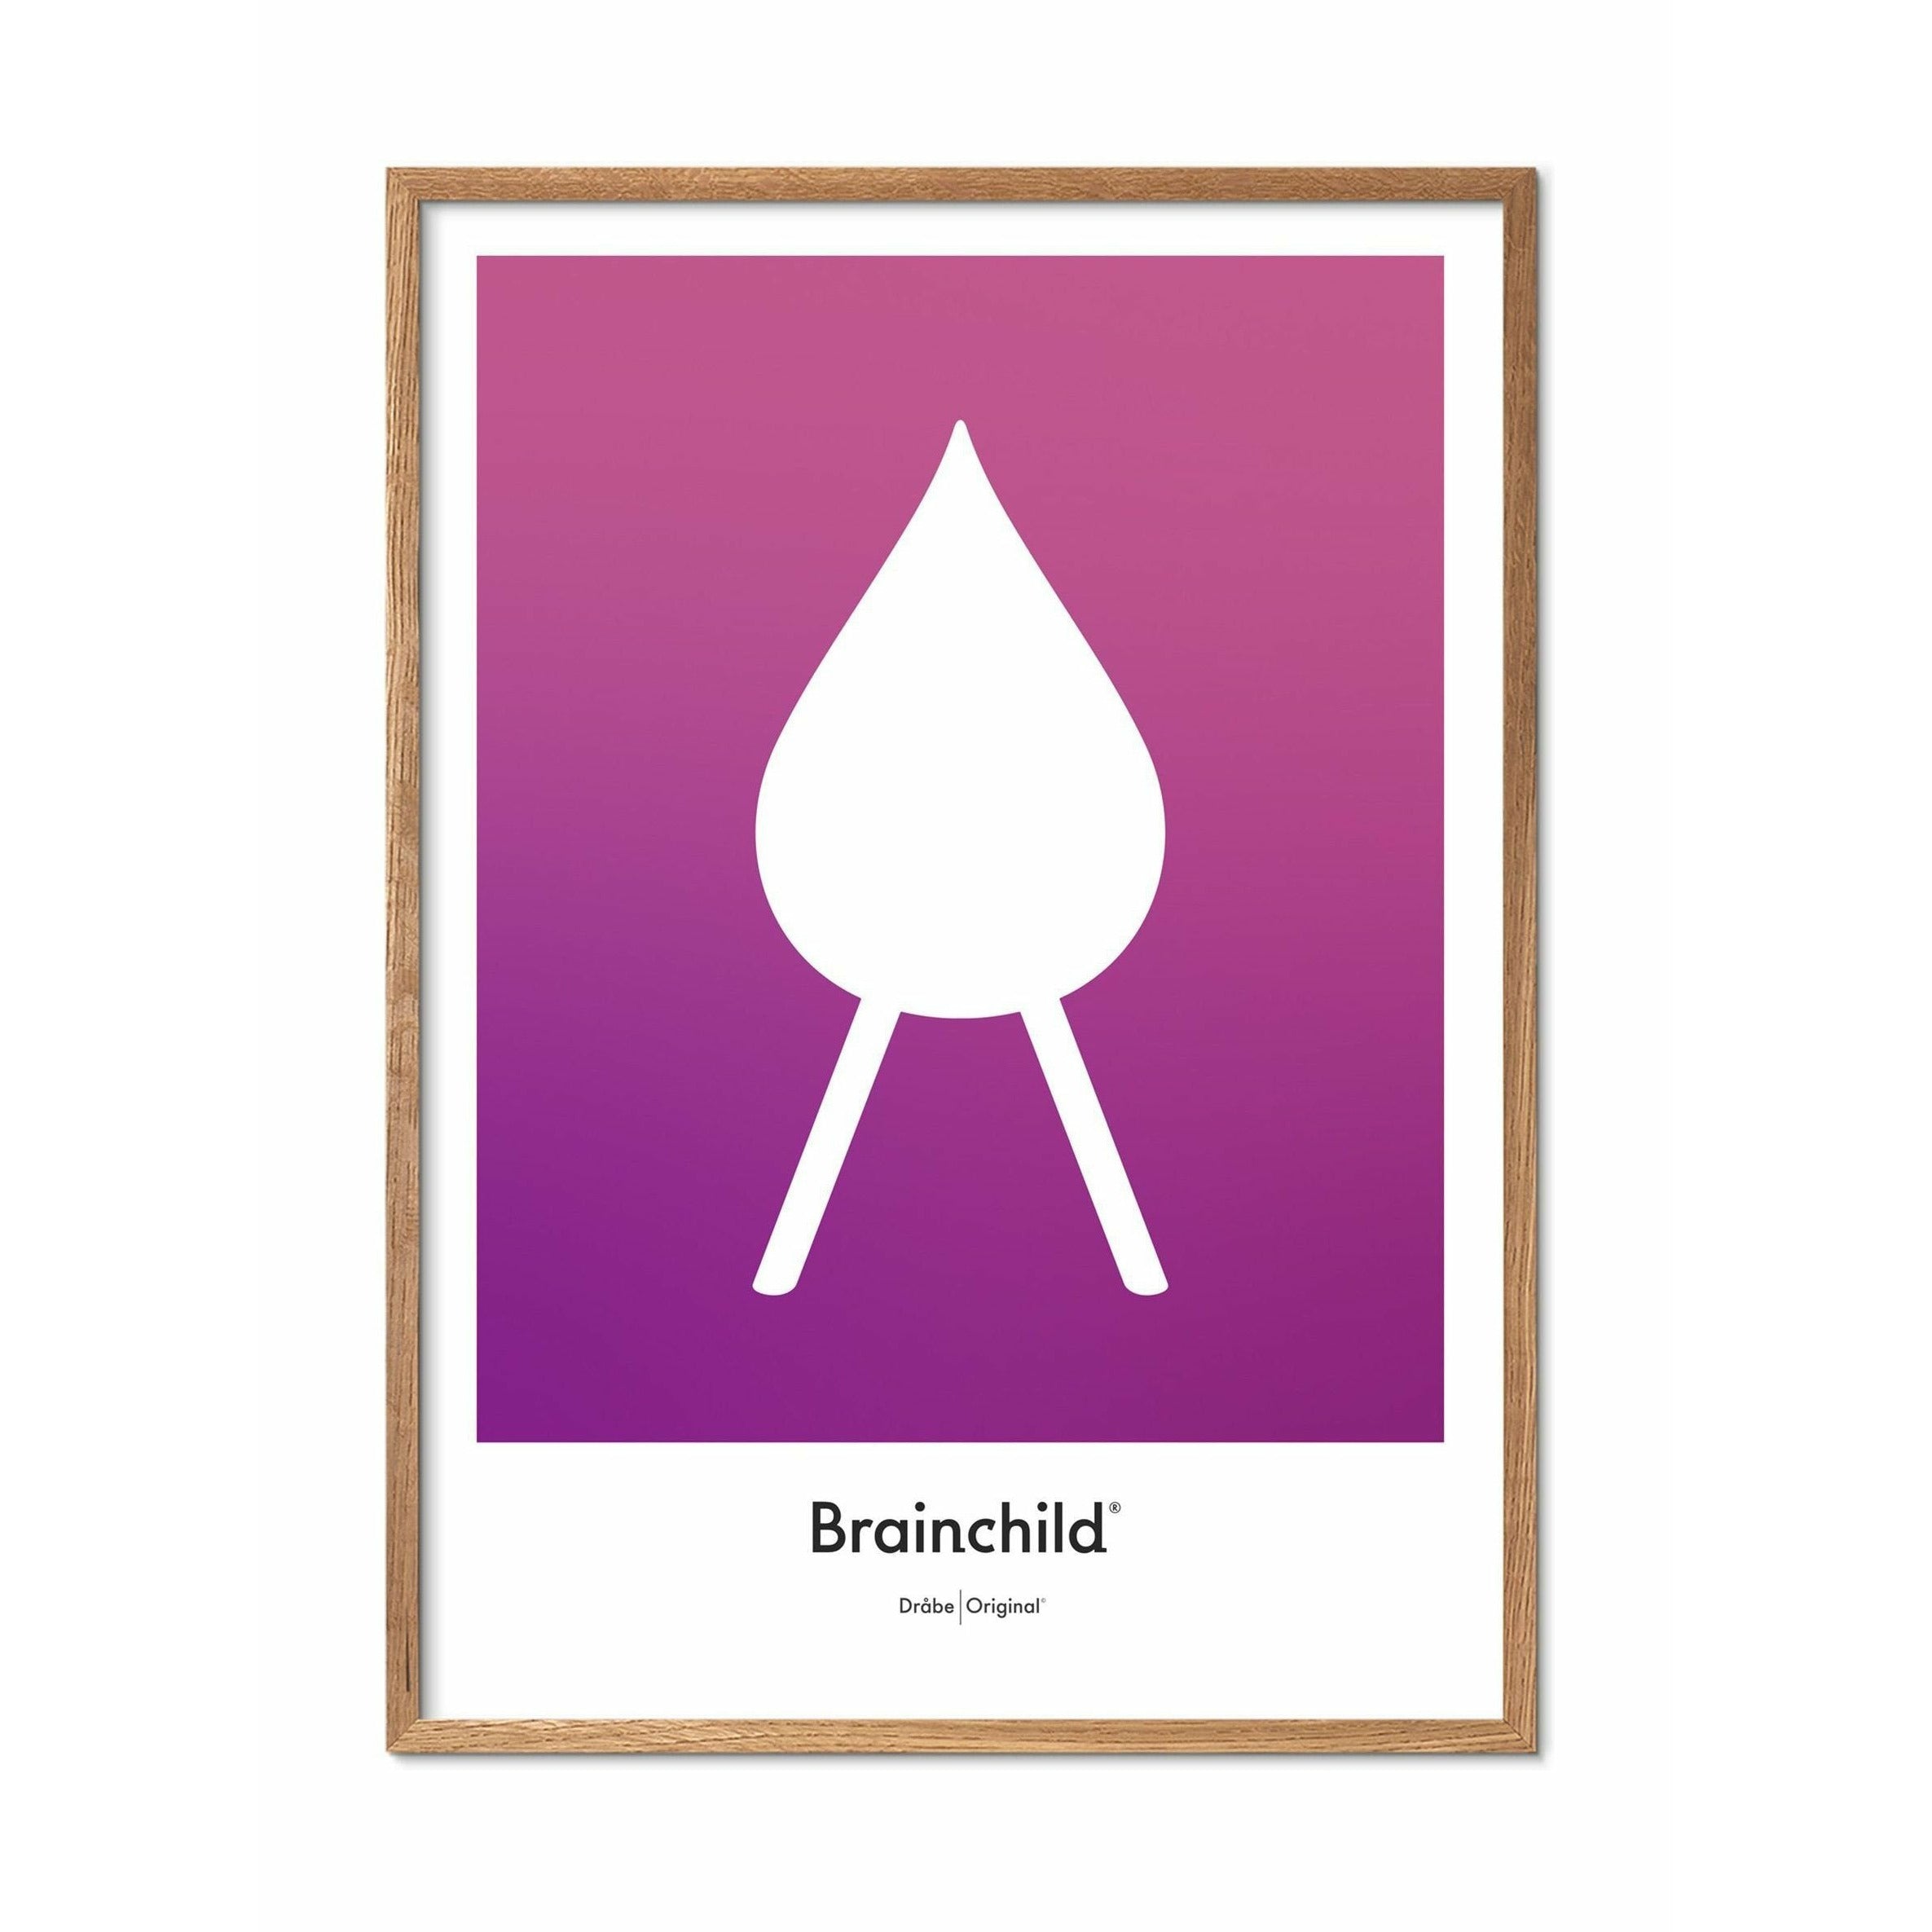 Brainchild Affiche de l'icône de conception de chute, cadre en bois clair 30x40 cm, violet